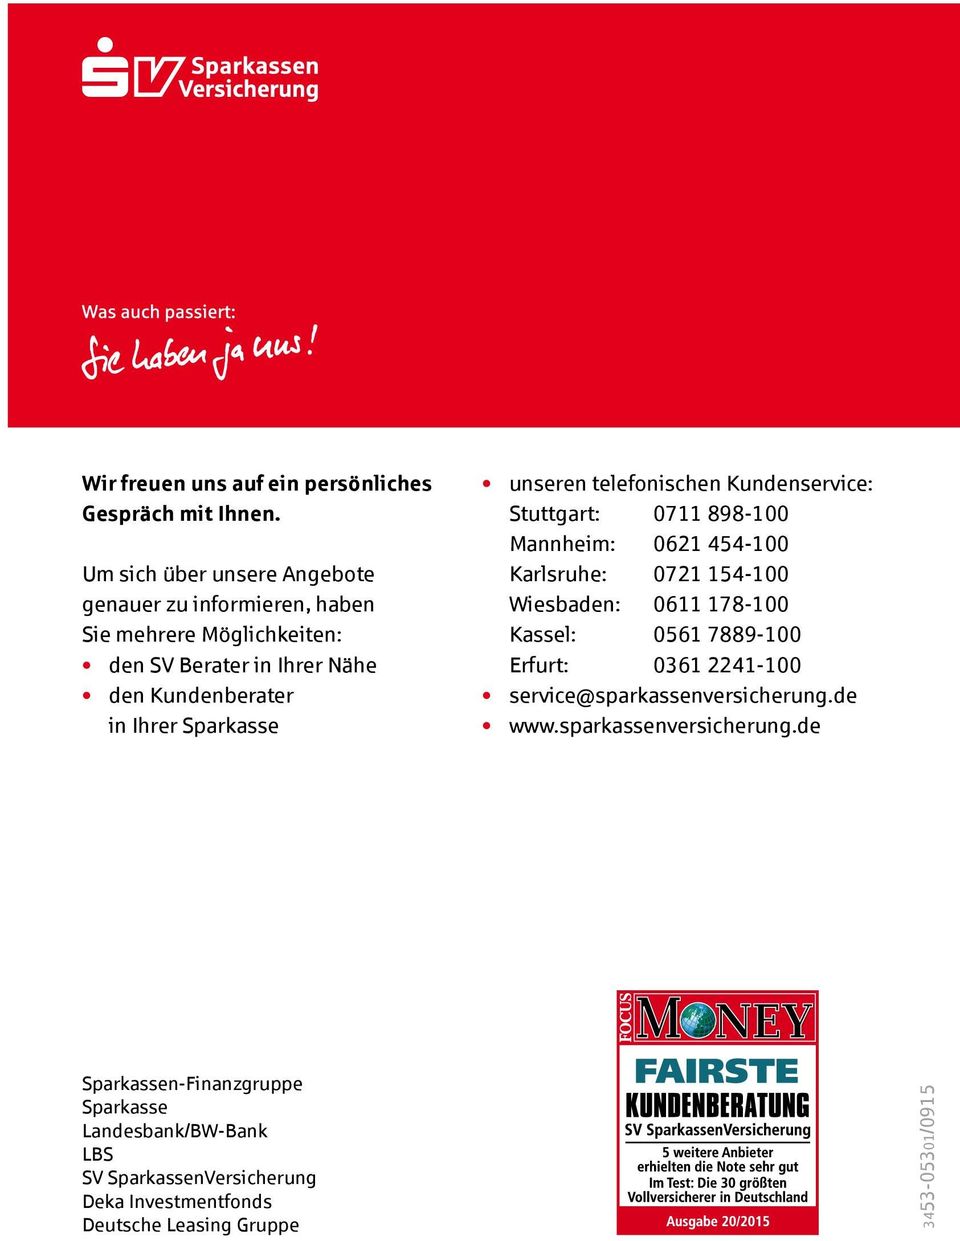 telefonischen Kundenservice: Stuttgart: 0711 898-100 Mannheim: 0621 454-100 Karlsruhe: 0721 154-100 Wiesbaden: 0611 178-100 Kassel: 0561 7889-100 Erfurt: 0361 2241-100